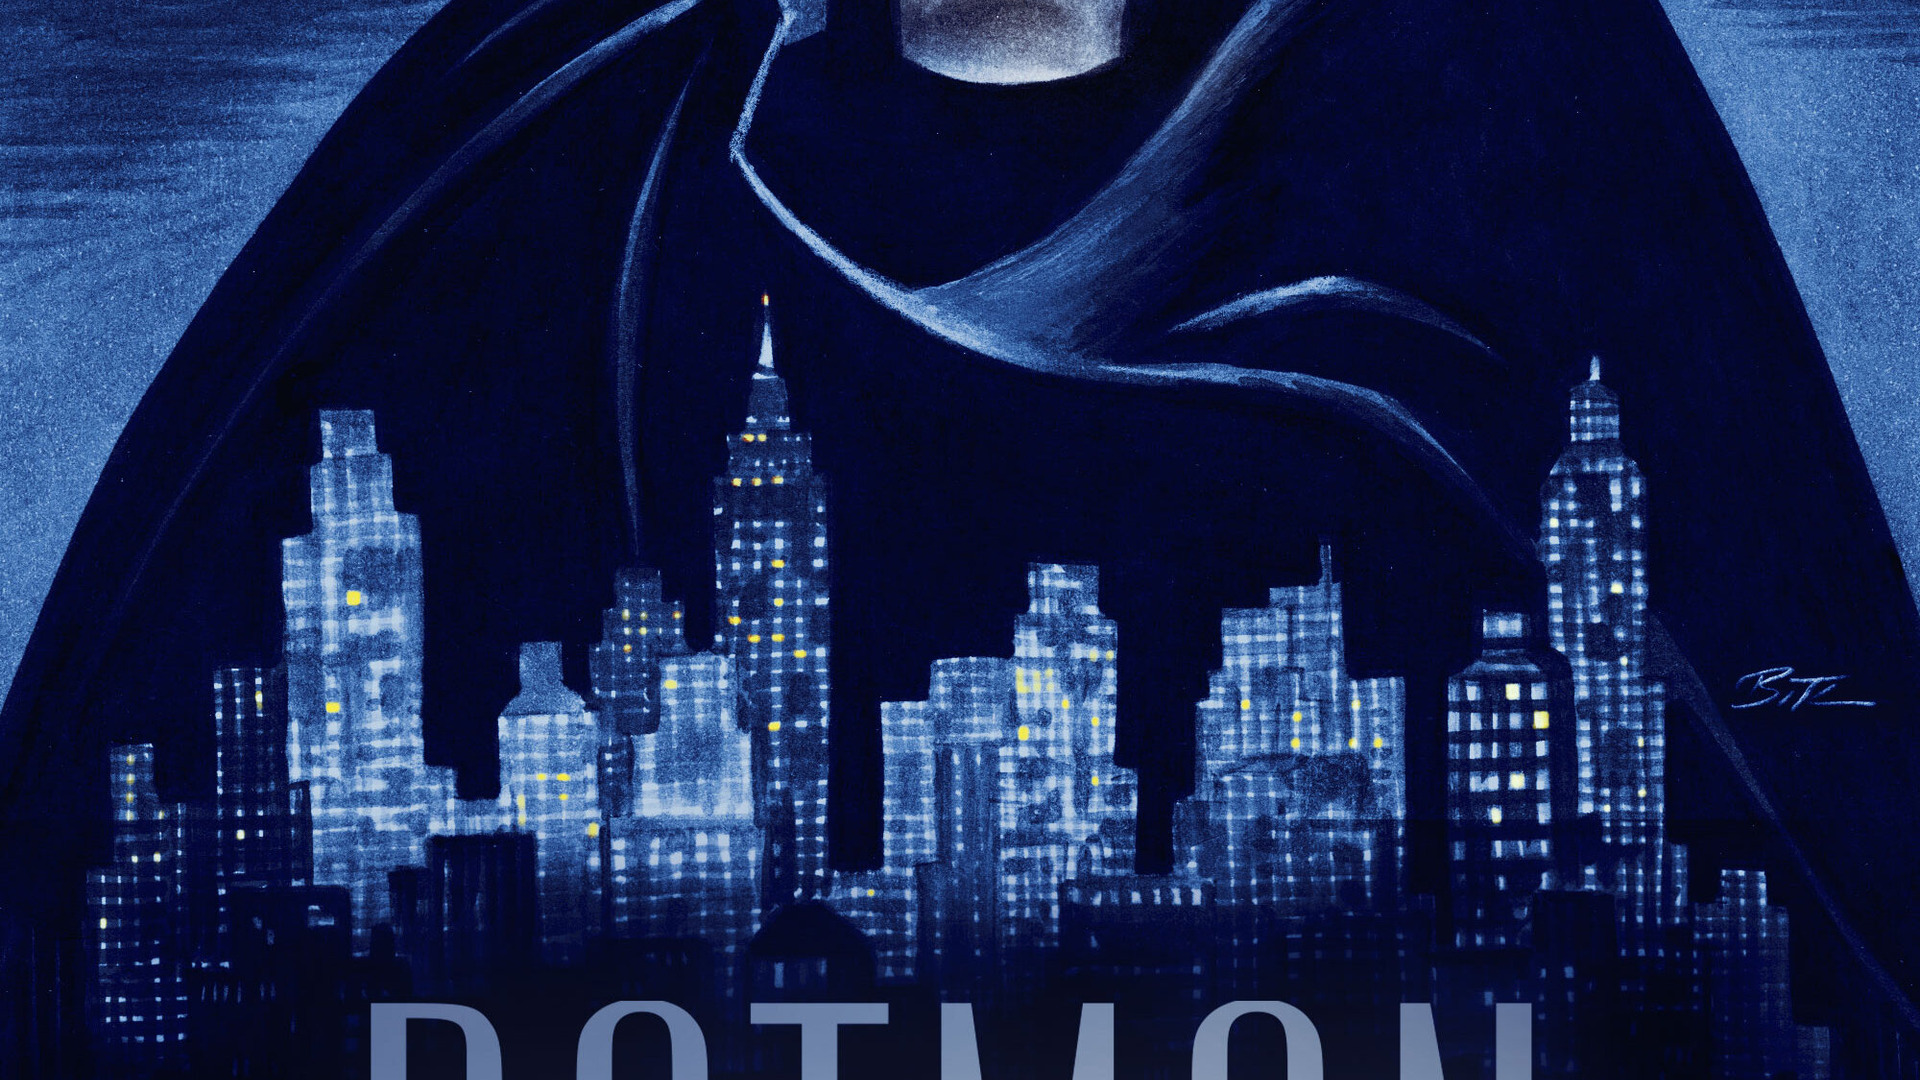 Сериал Бэтмен: Крестоносец в плаще